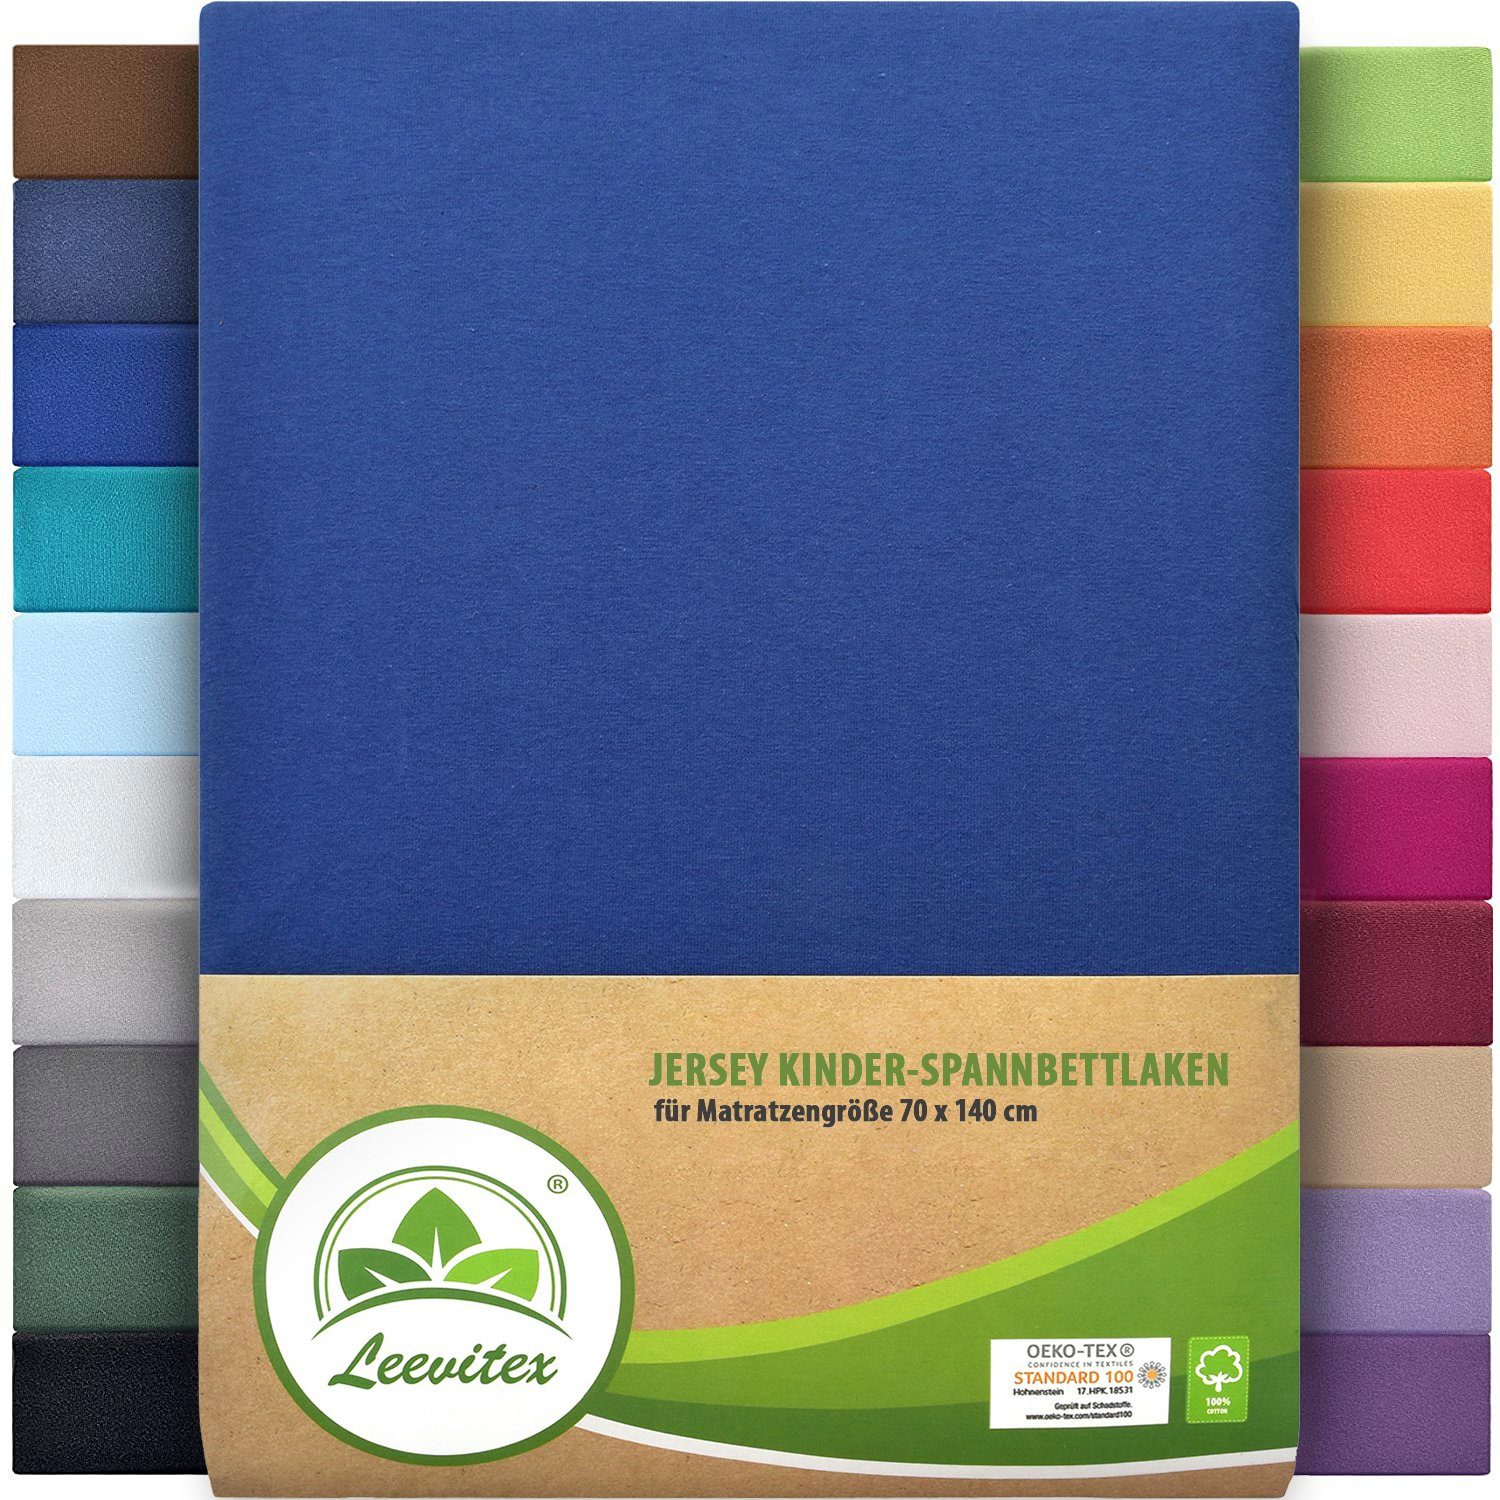 Spannbettlaken Classic Jersey, leevitex®, Gummizug: rundum, 100% Baumwolle, anschmiegsam & dehnbar, diverse Größen und Farben Royalblau / Königsblau